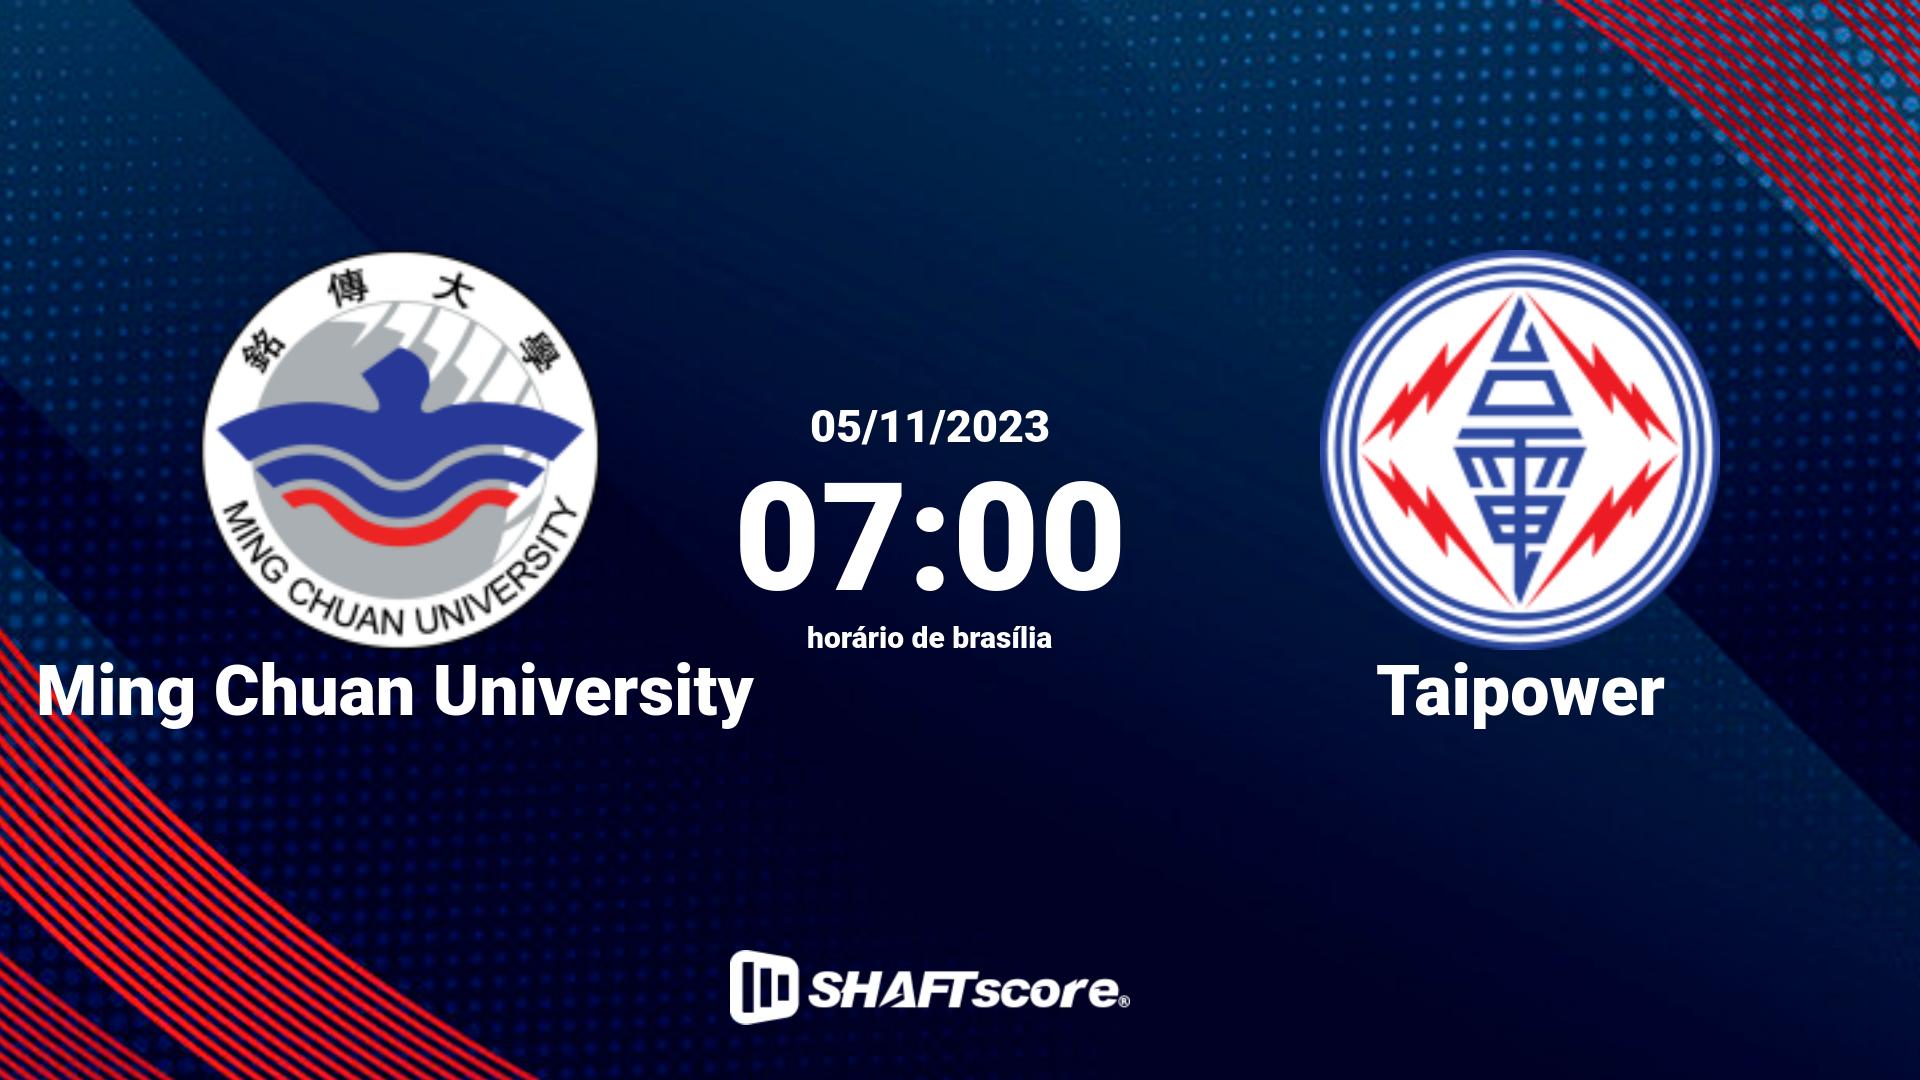 Estatísticas do jogo Ming Chuan University vs Taipower 05.11 07:00